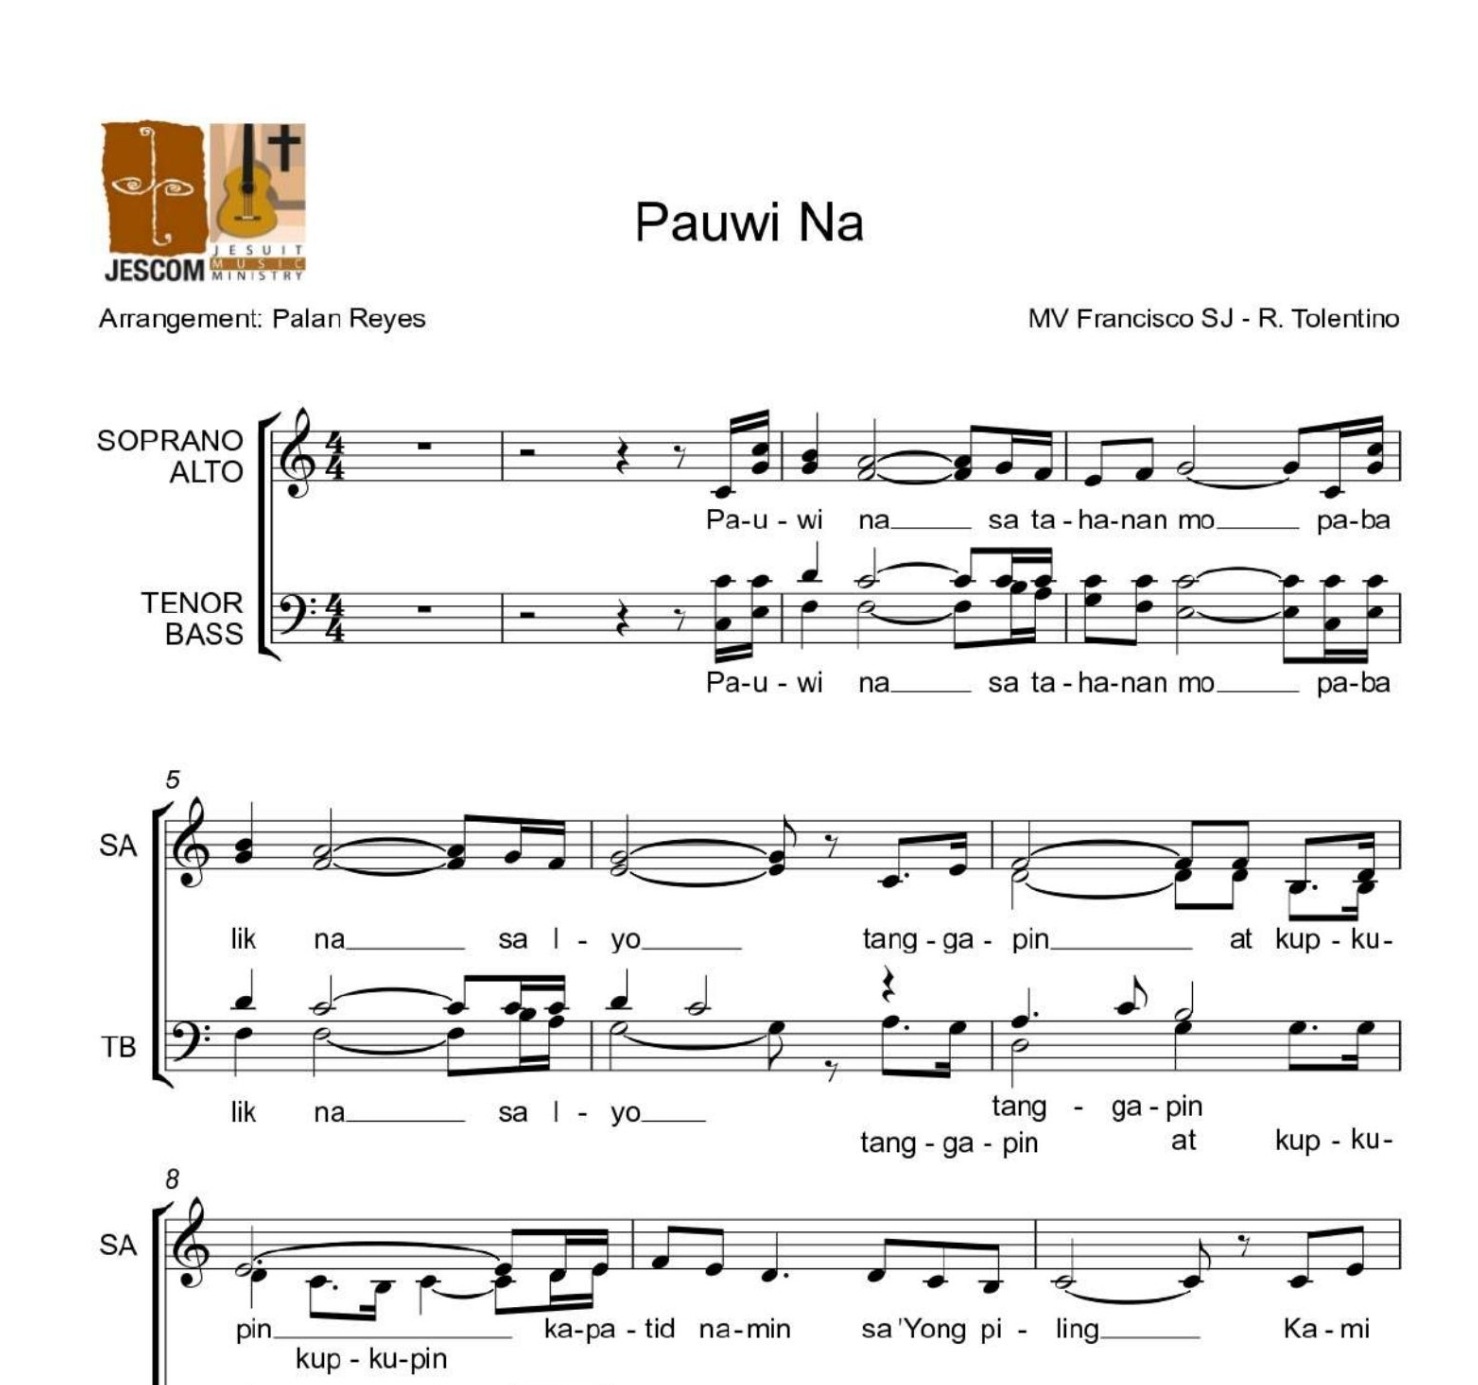 PAUWI NA – Music Sheet